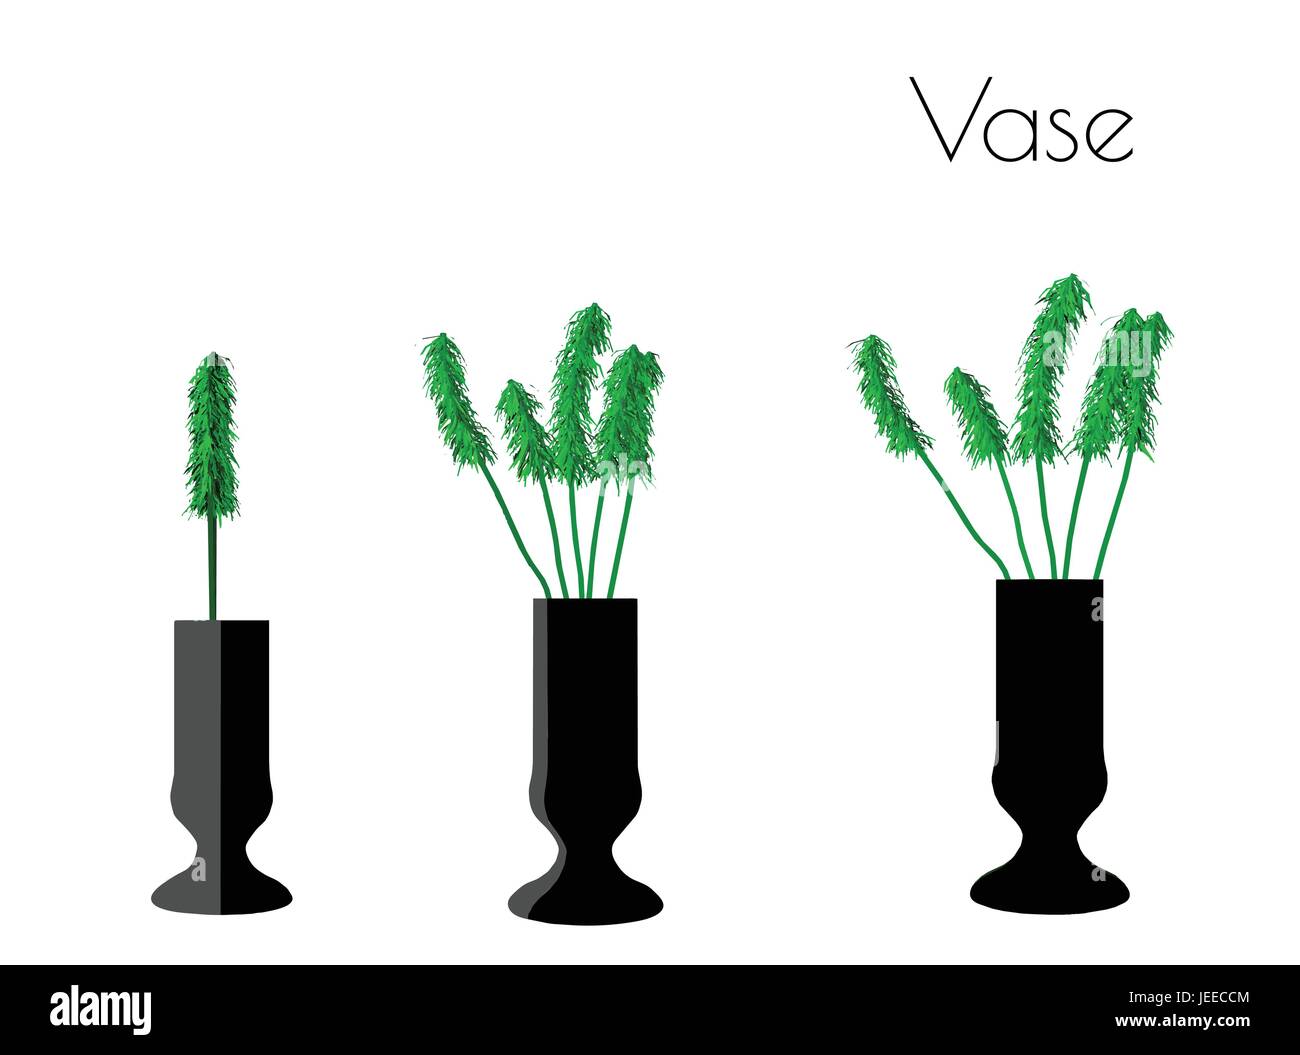 EPS 10 vector illustration of Vase silhouette on white background Stock Vector